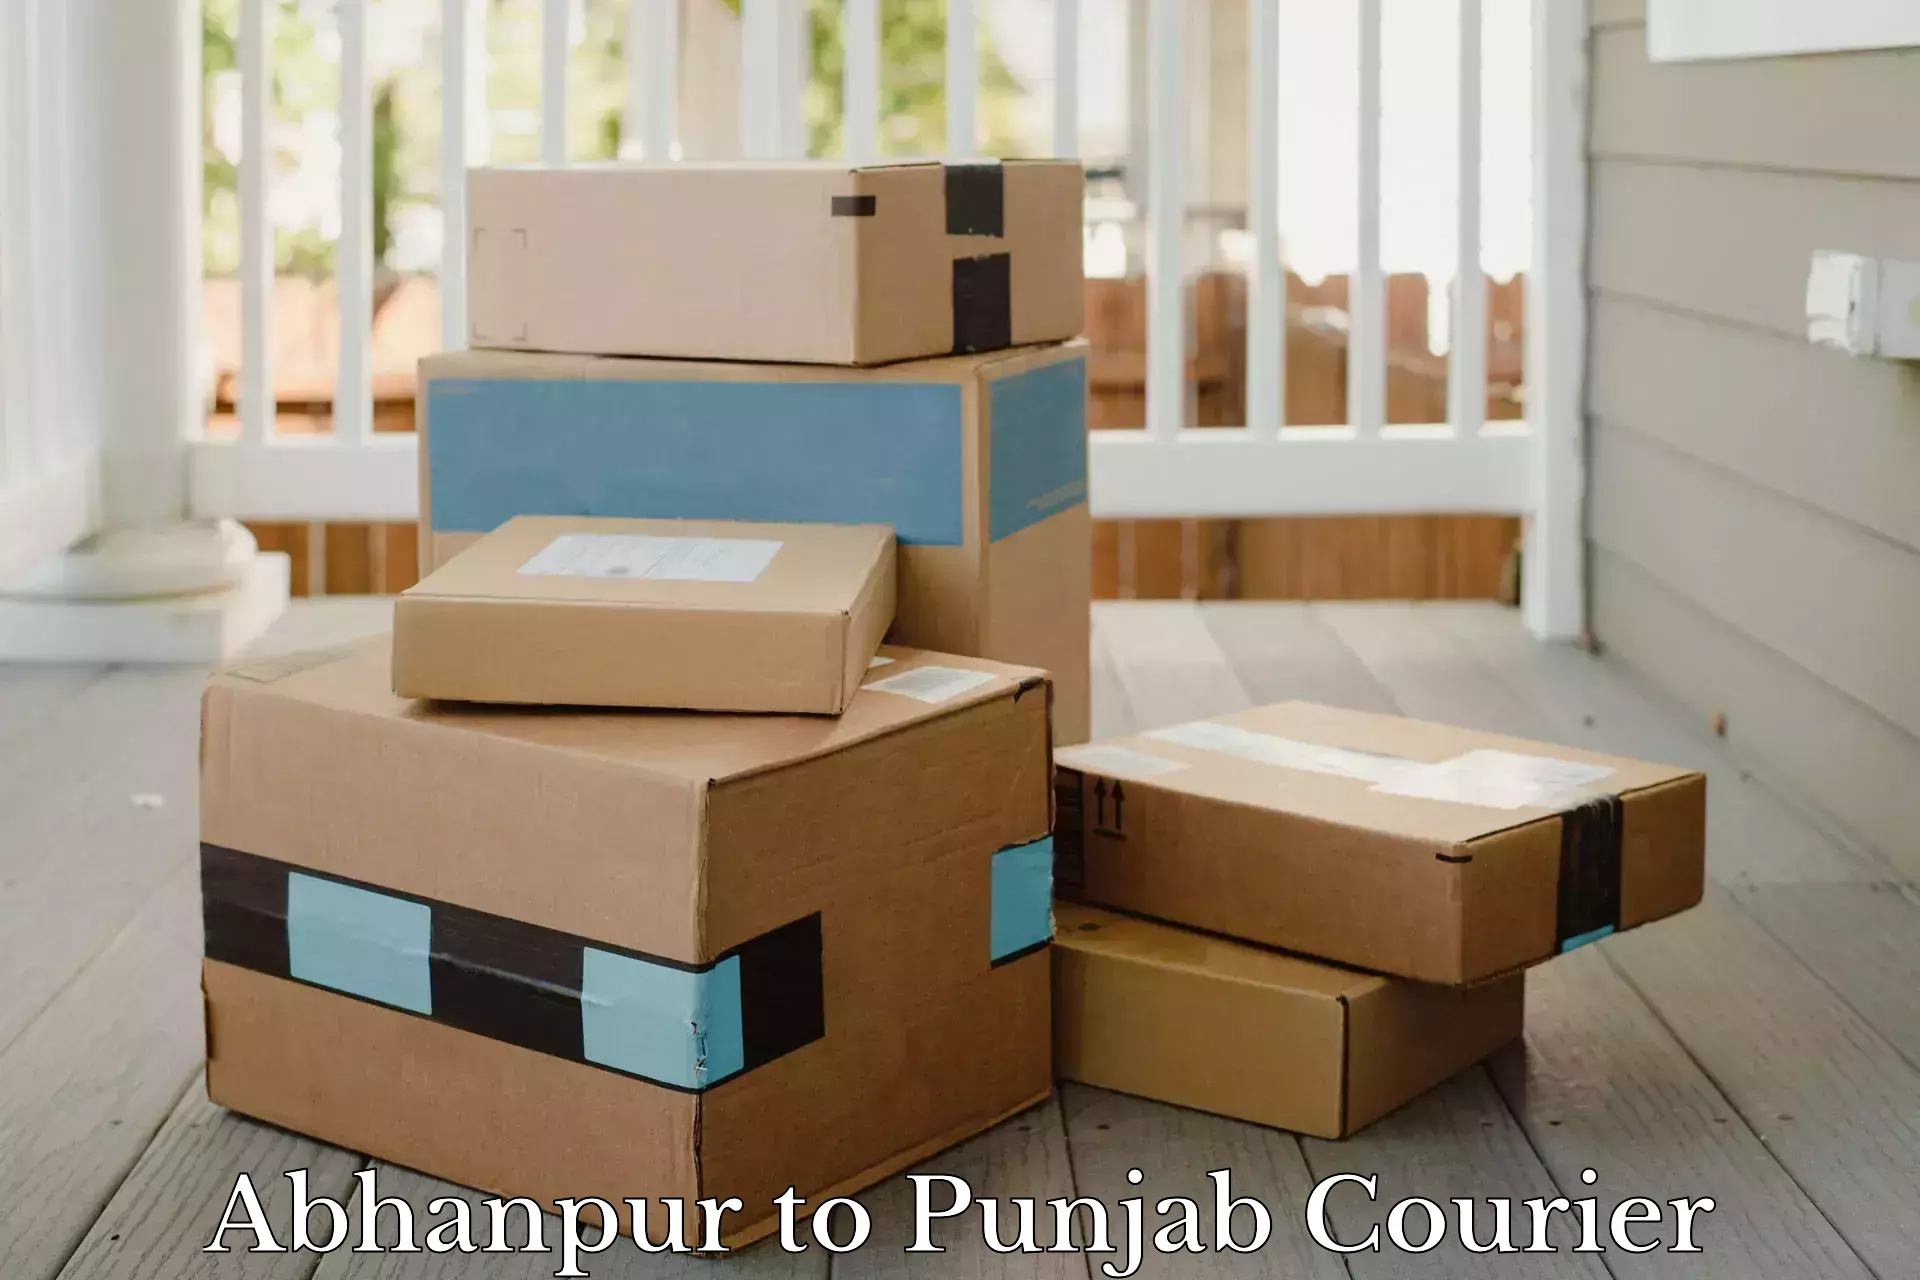 Express package handling Abhanpur to Punjab